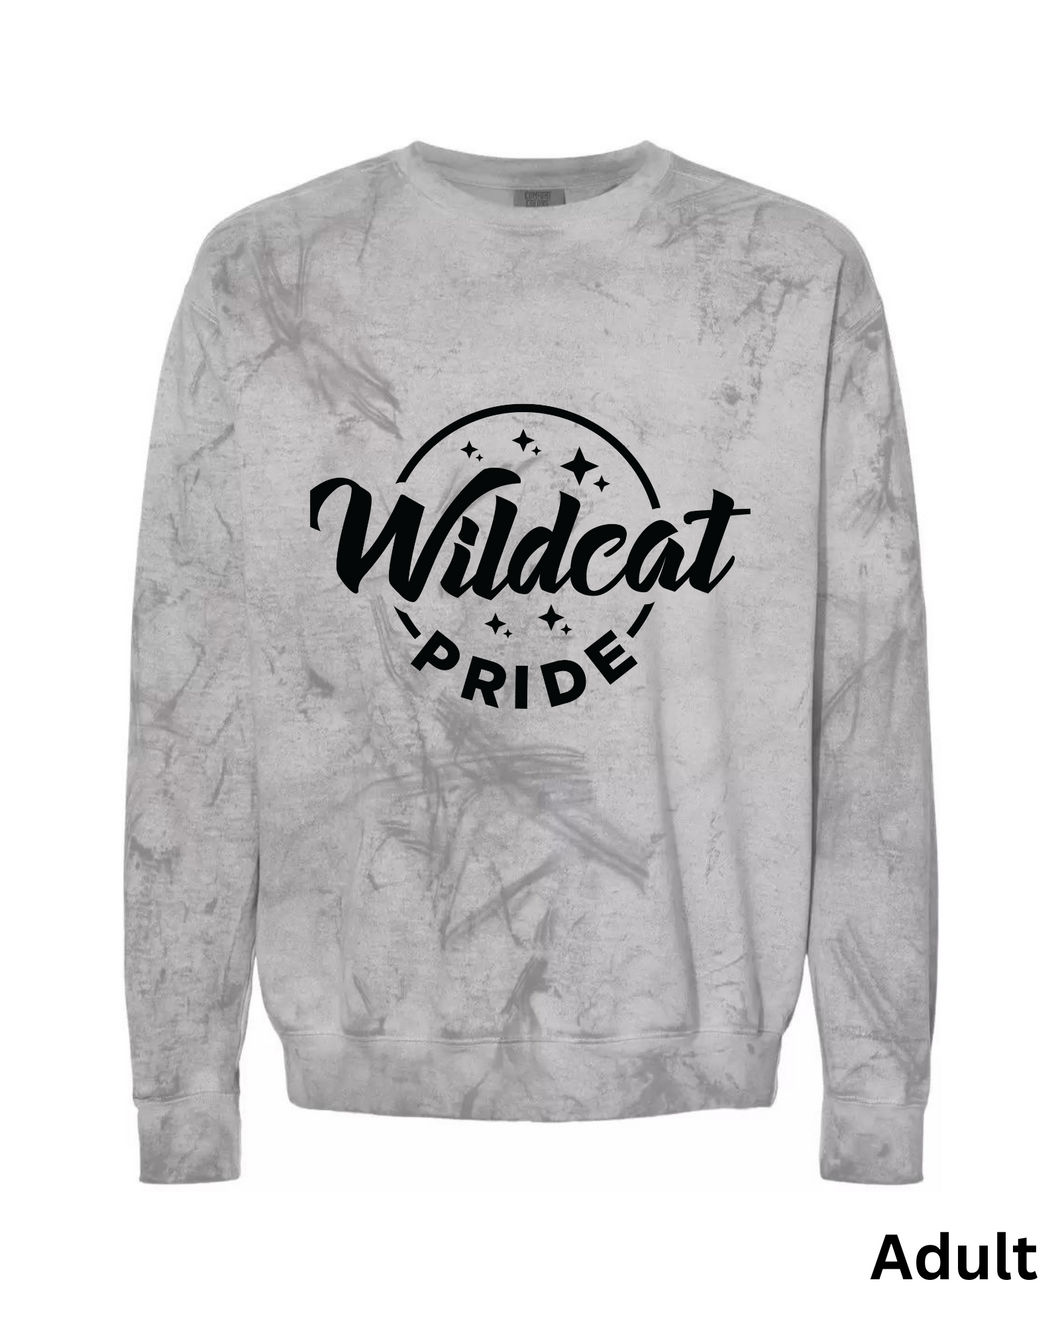 wildcat pride sweatshirt